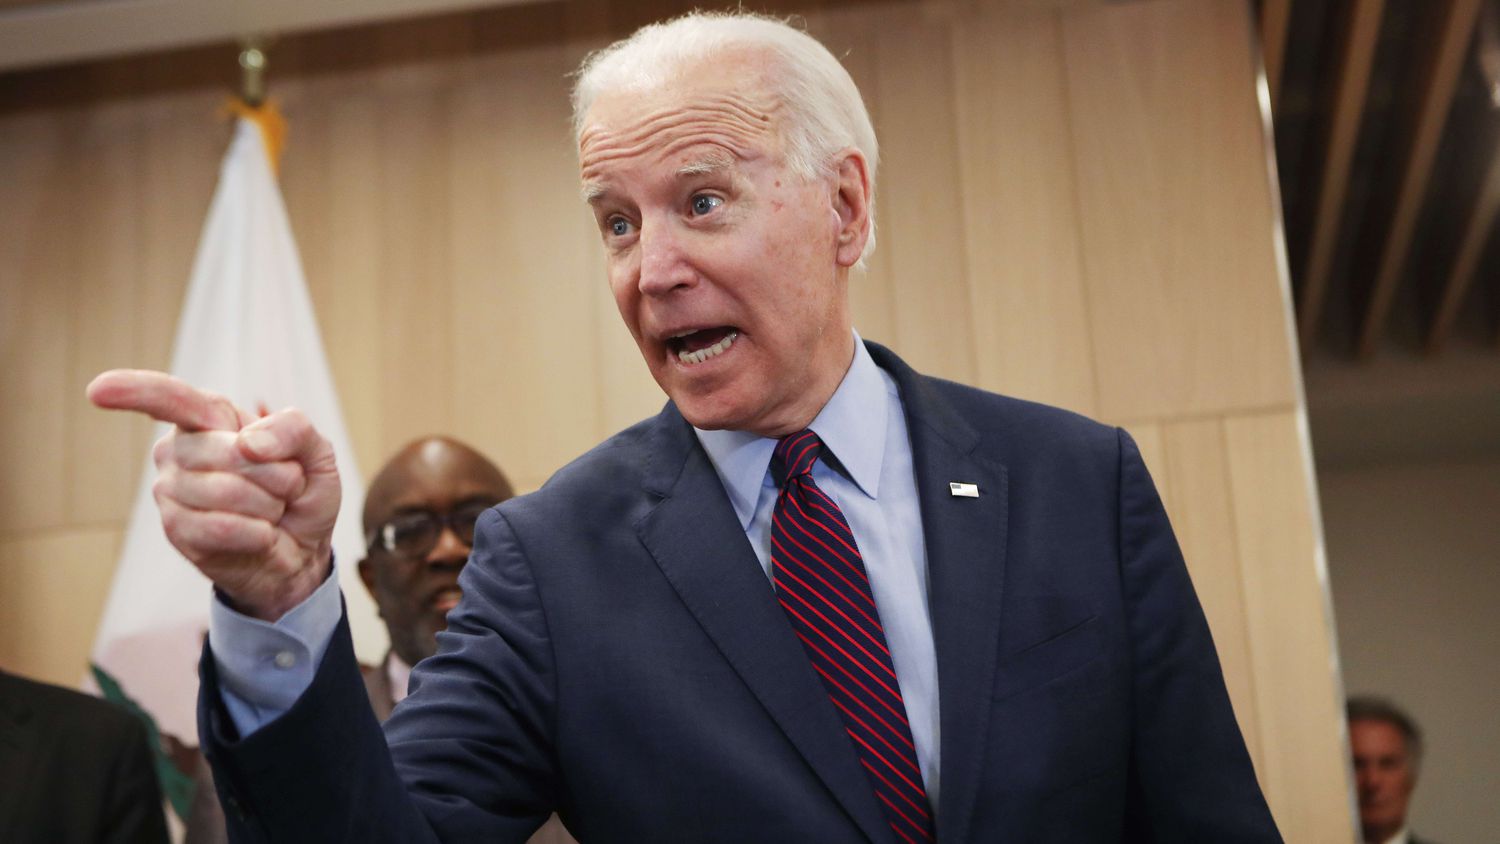 Biden asesta un duro golpe a Sanders al imponerse en las primarias demócratas de Michigan